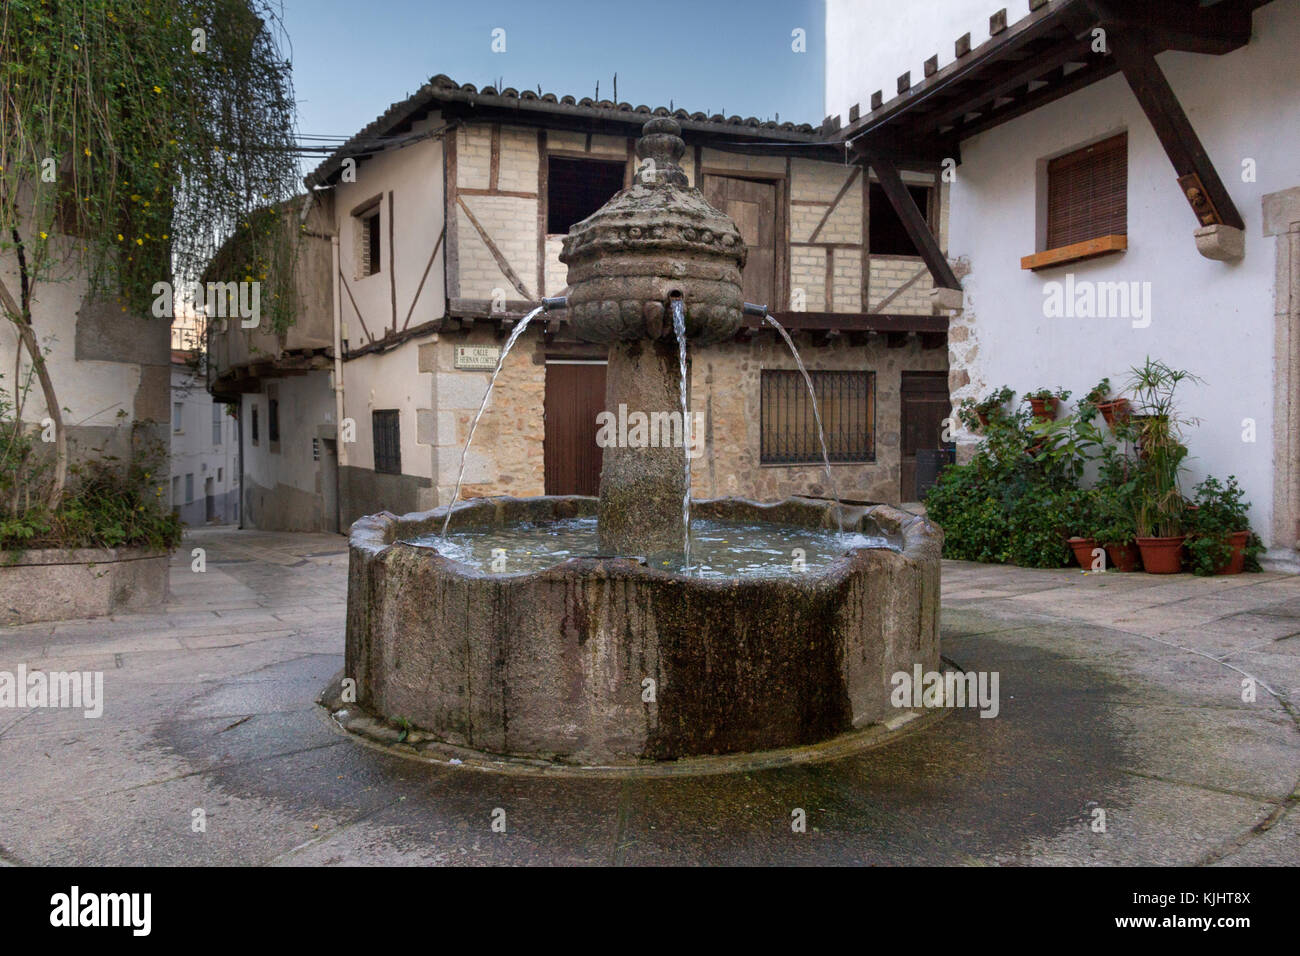 Fuente de los cuatro caños, fountain in the middle of a quiet lonely square in Garganata la Olla, Extremadura Spain Stock Photo